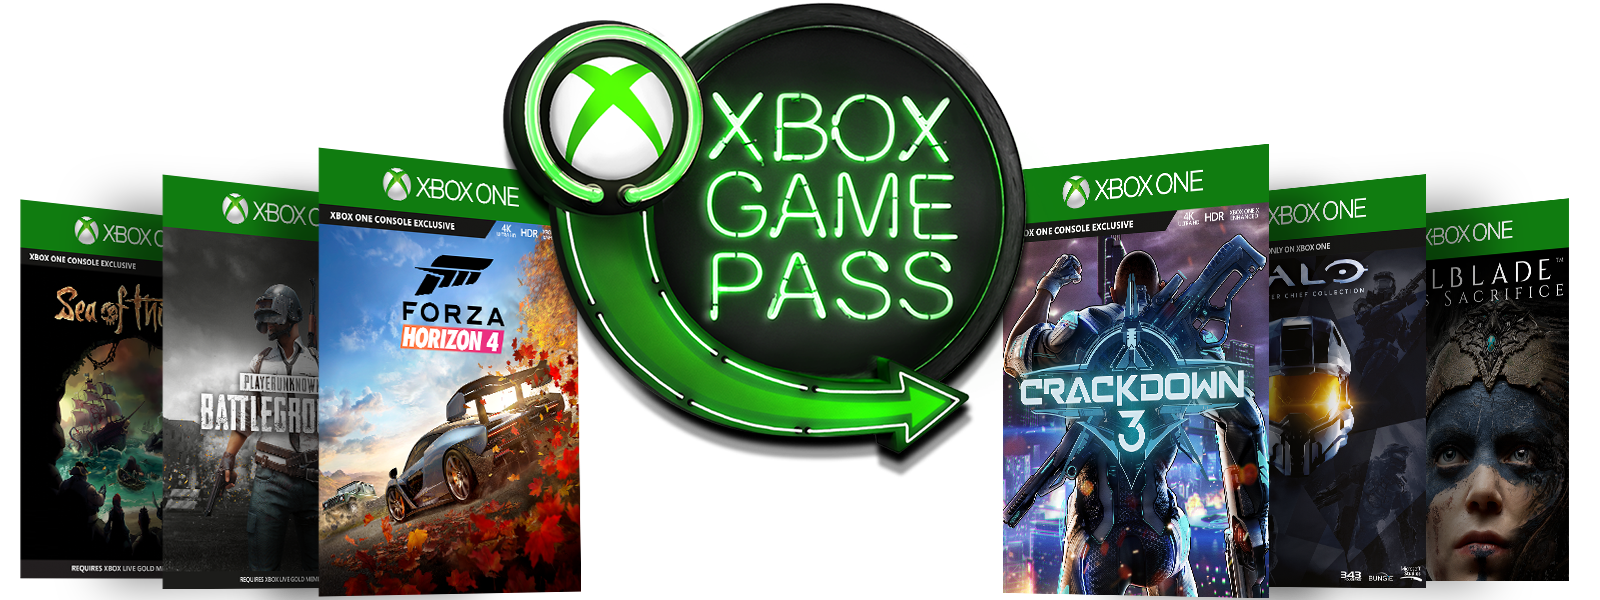 Хбокс гейм пасс игры. Xbox Ultimate. Xbox game Pass. Xbox game Pass Ultimate. Подписка Икс бокс гейм пасс игры.